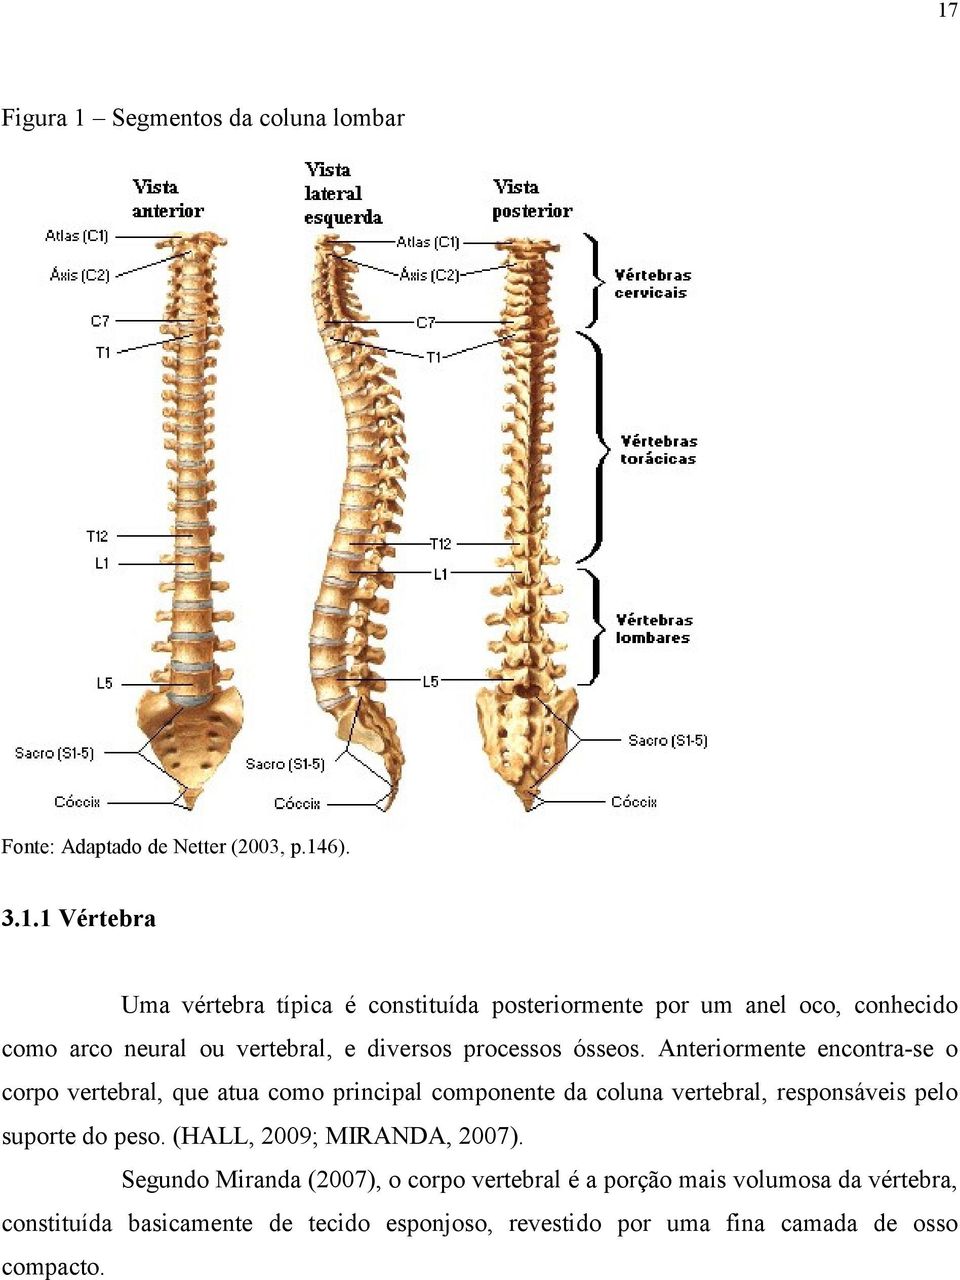 Anteriormente encontra-se o corpo vertebral, que atua como principal componente da coluna vertebral, responsáveis pelo suporte do peso.